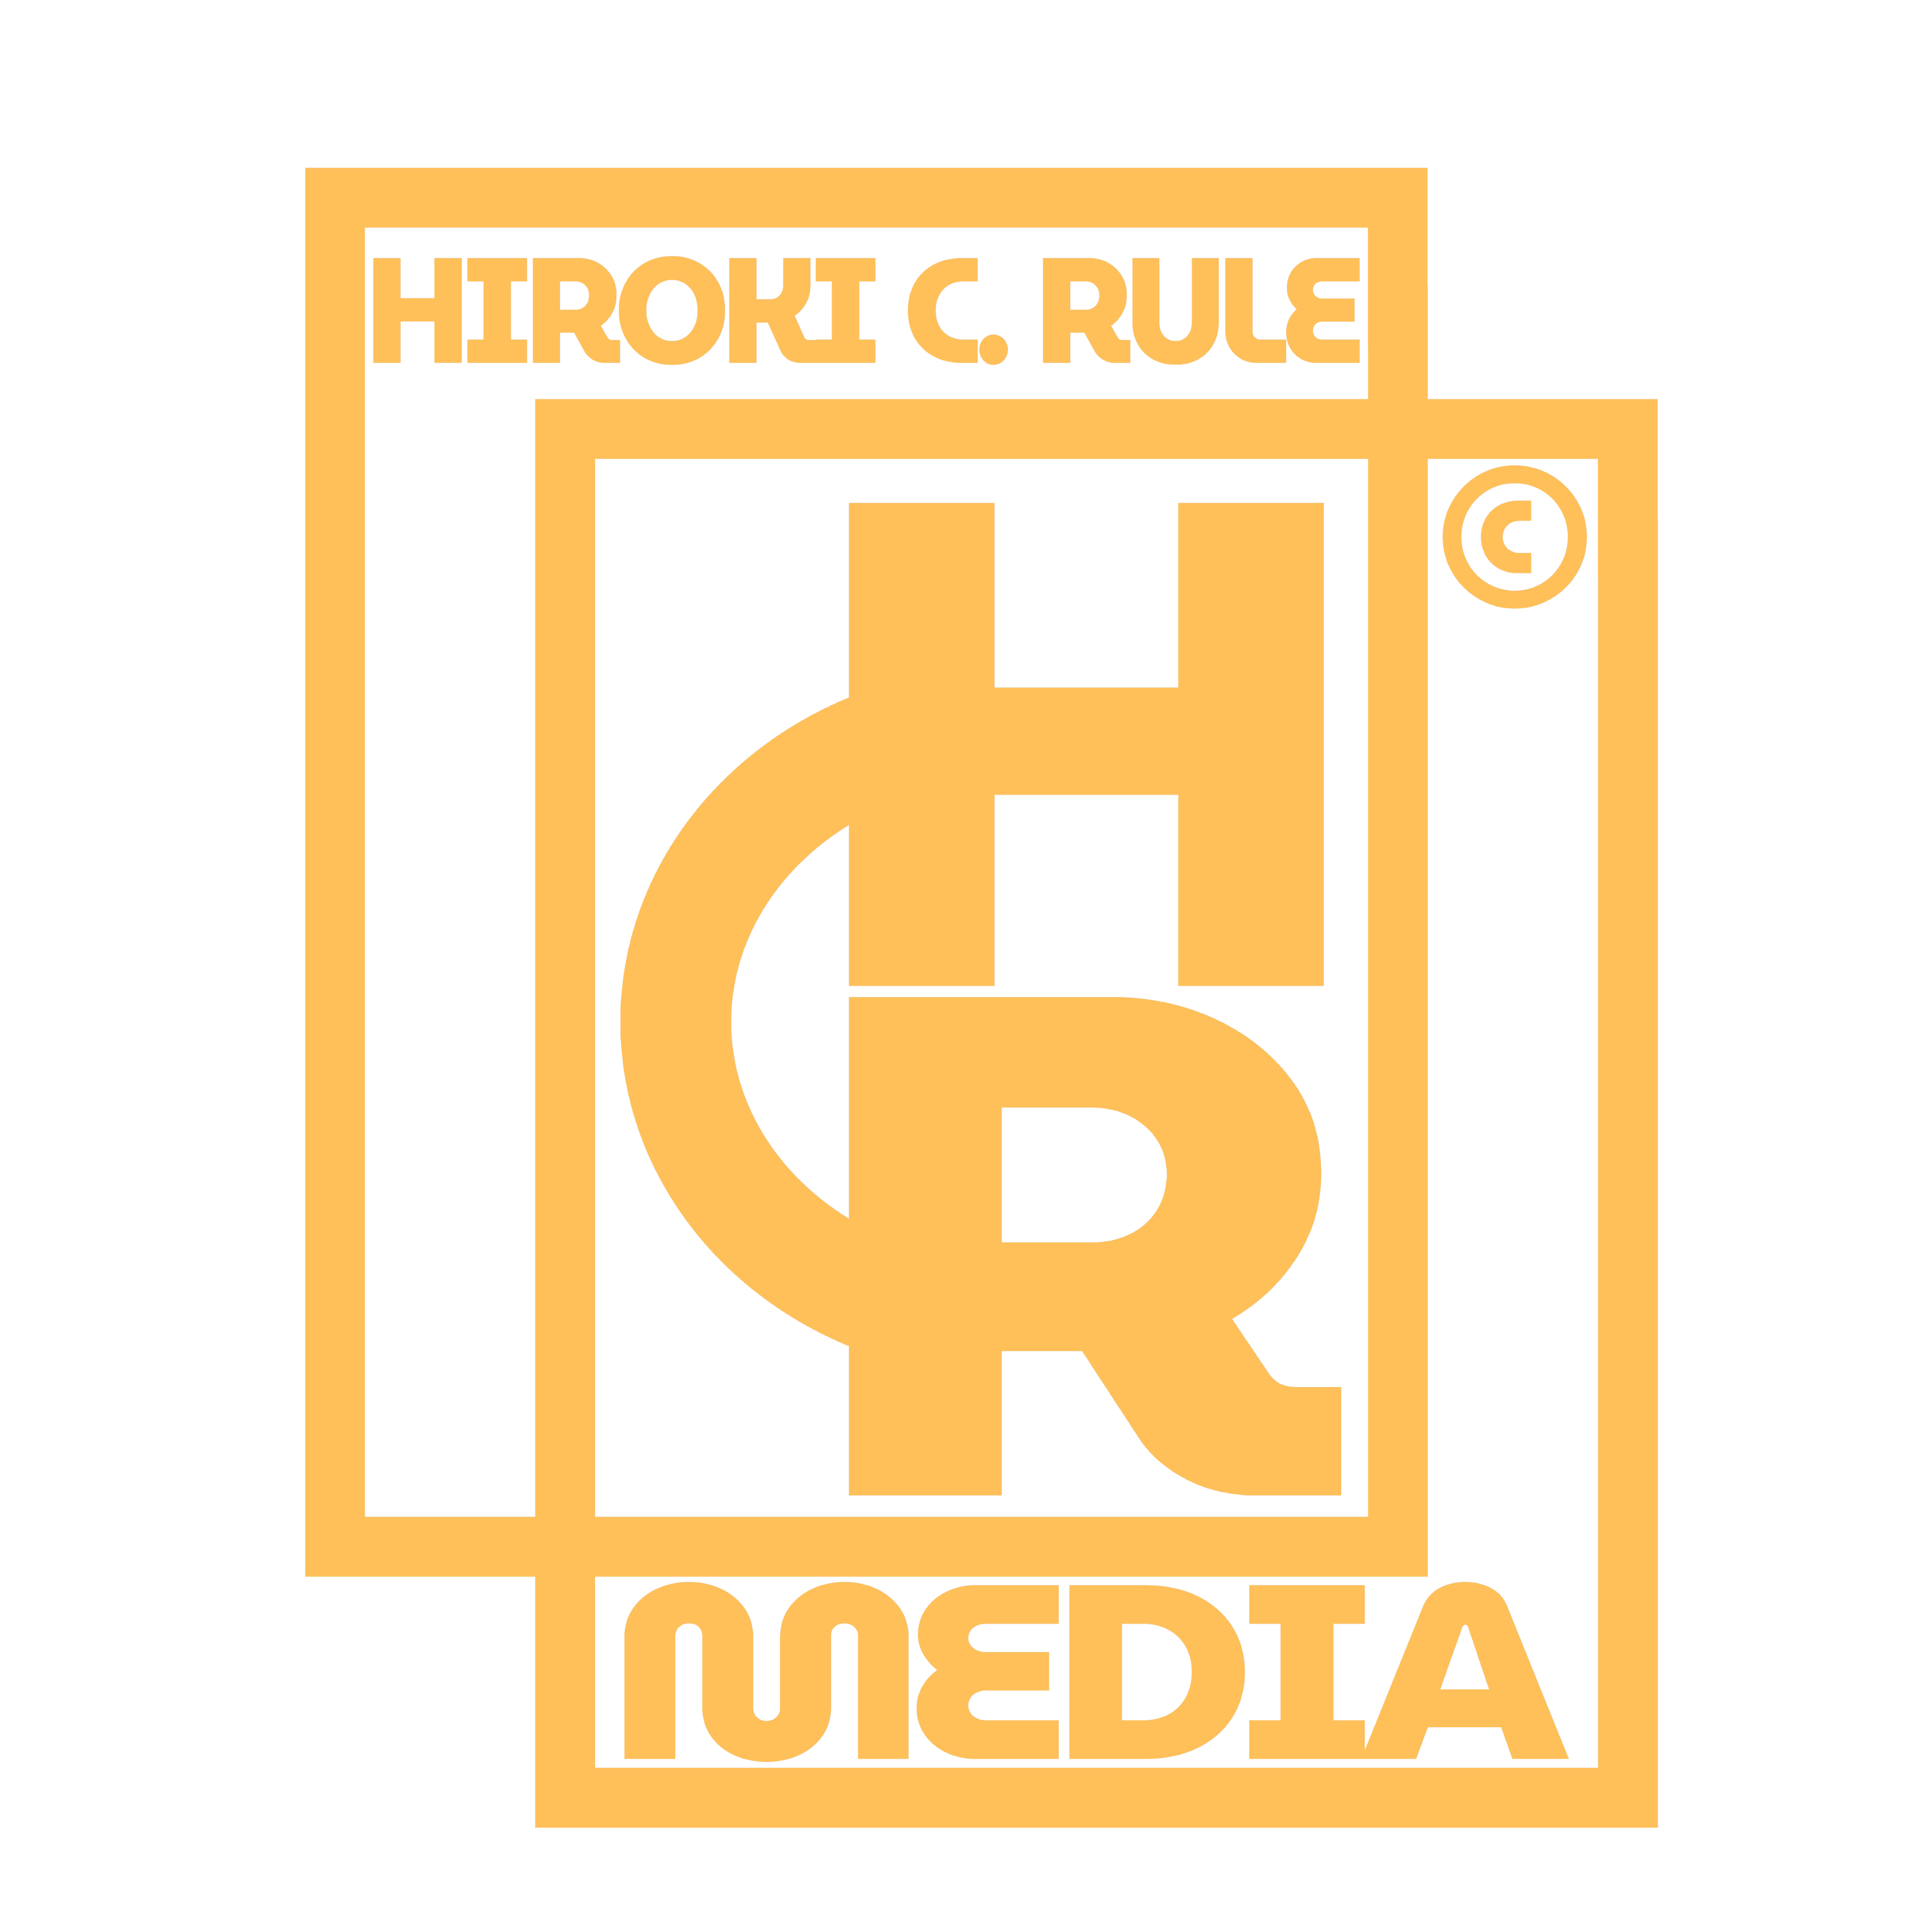 HCRmedia